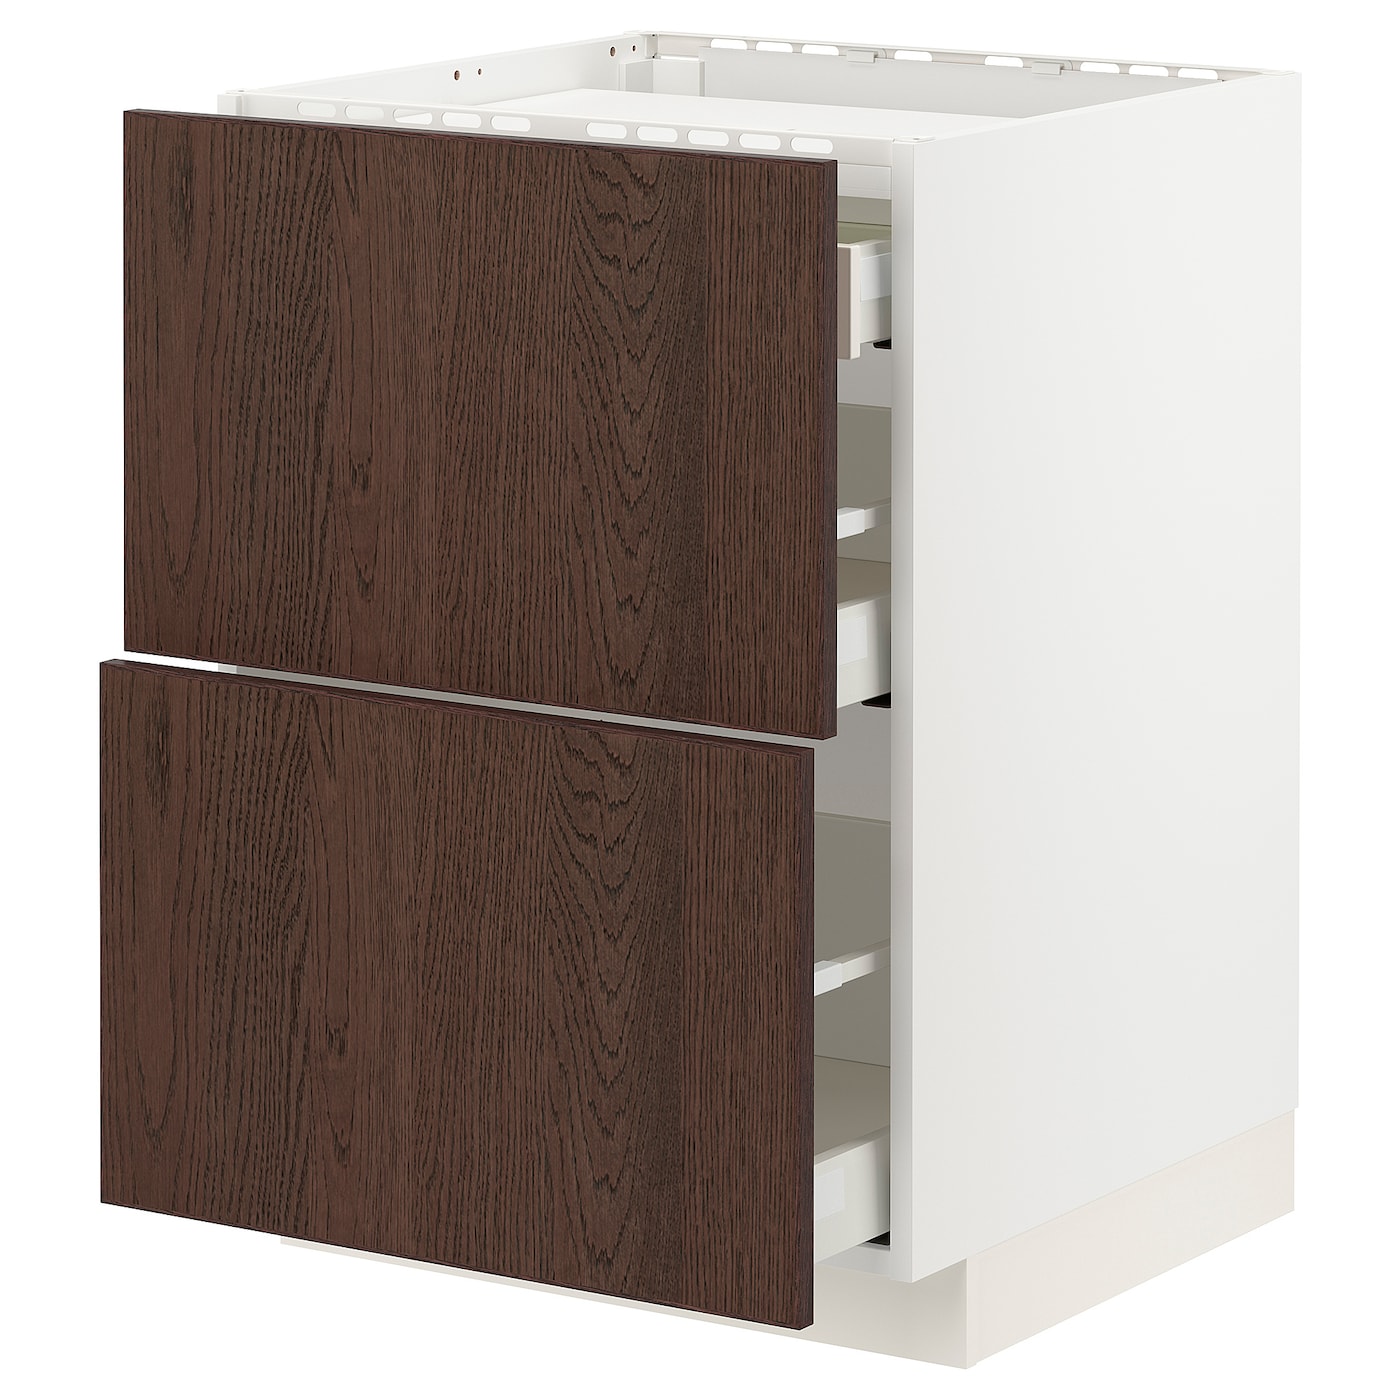 Напольный кухонный шкаф  - IKEA METOD MAXIMERA, 88x62x60см, белый/темно-коричневый, МЕТОД МАКСИМЕРА ИКЕА